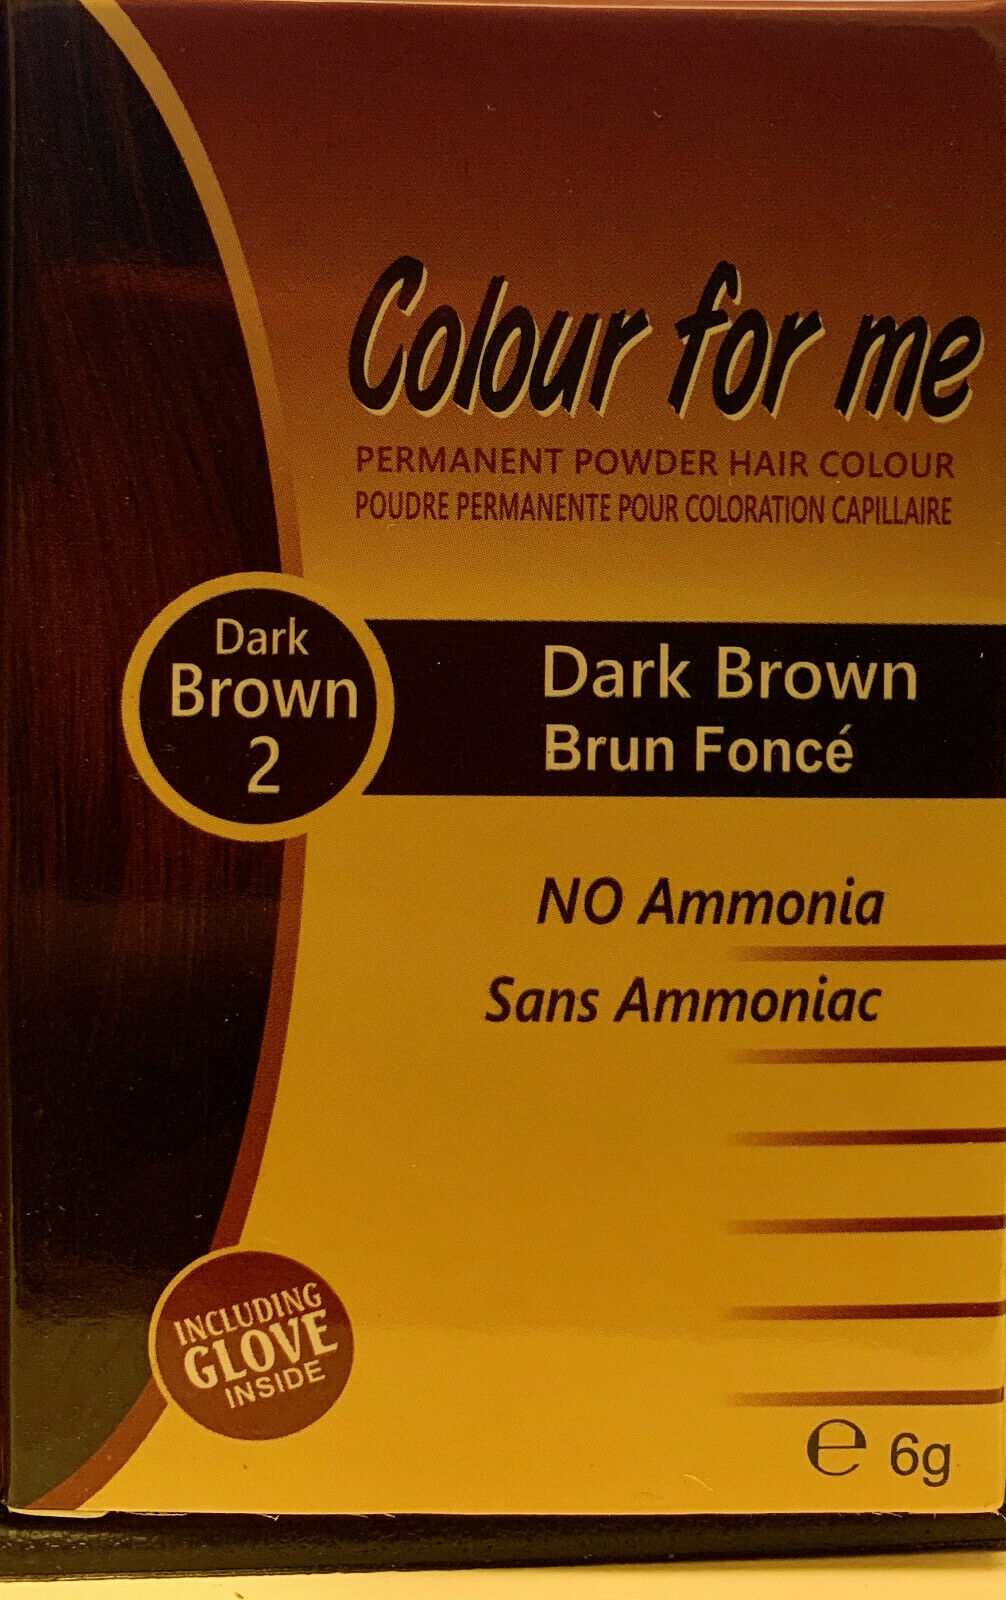 Colour For Me Permanent Powder Hair Colour